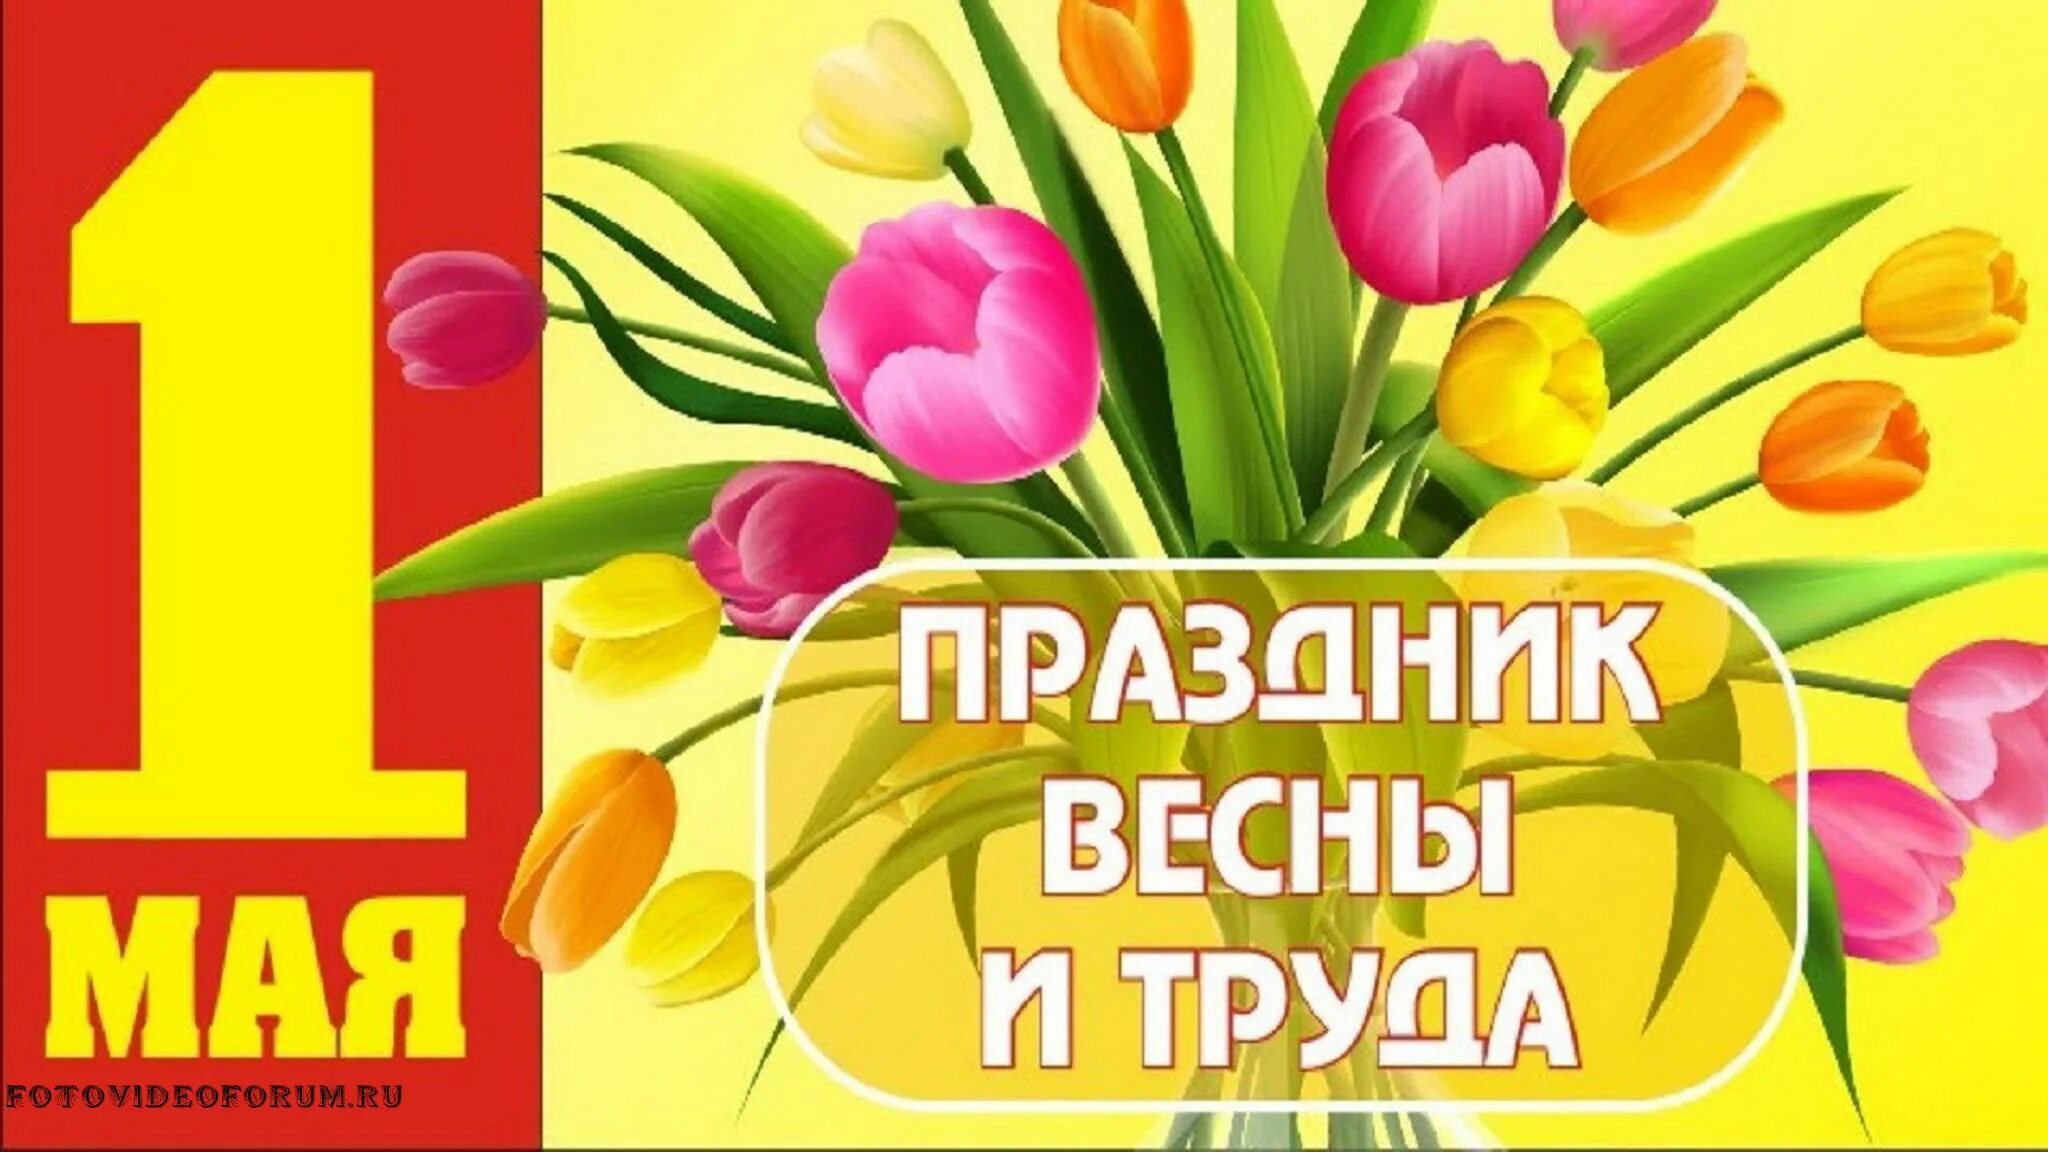 Поздравление с 1 мая. Открытки с 1 мая. 1 Мая праздник весны и труда. Поздравления с первым мая. Праздник весны и труда картинки